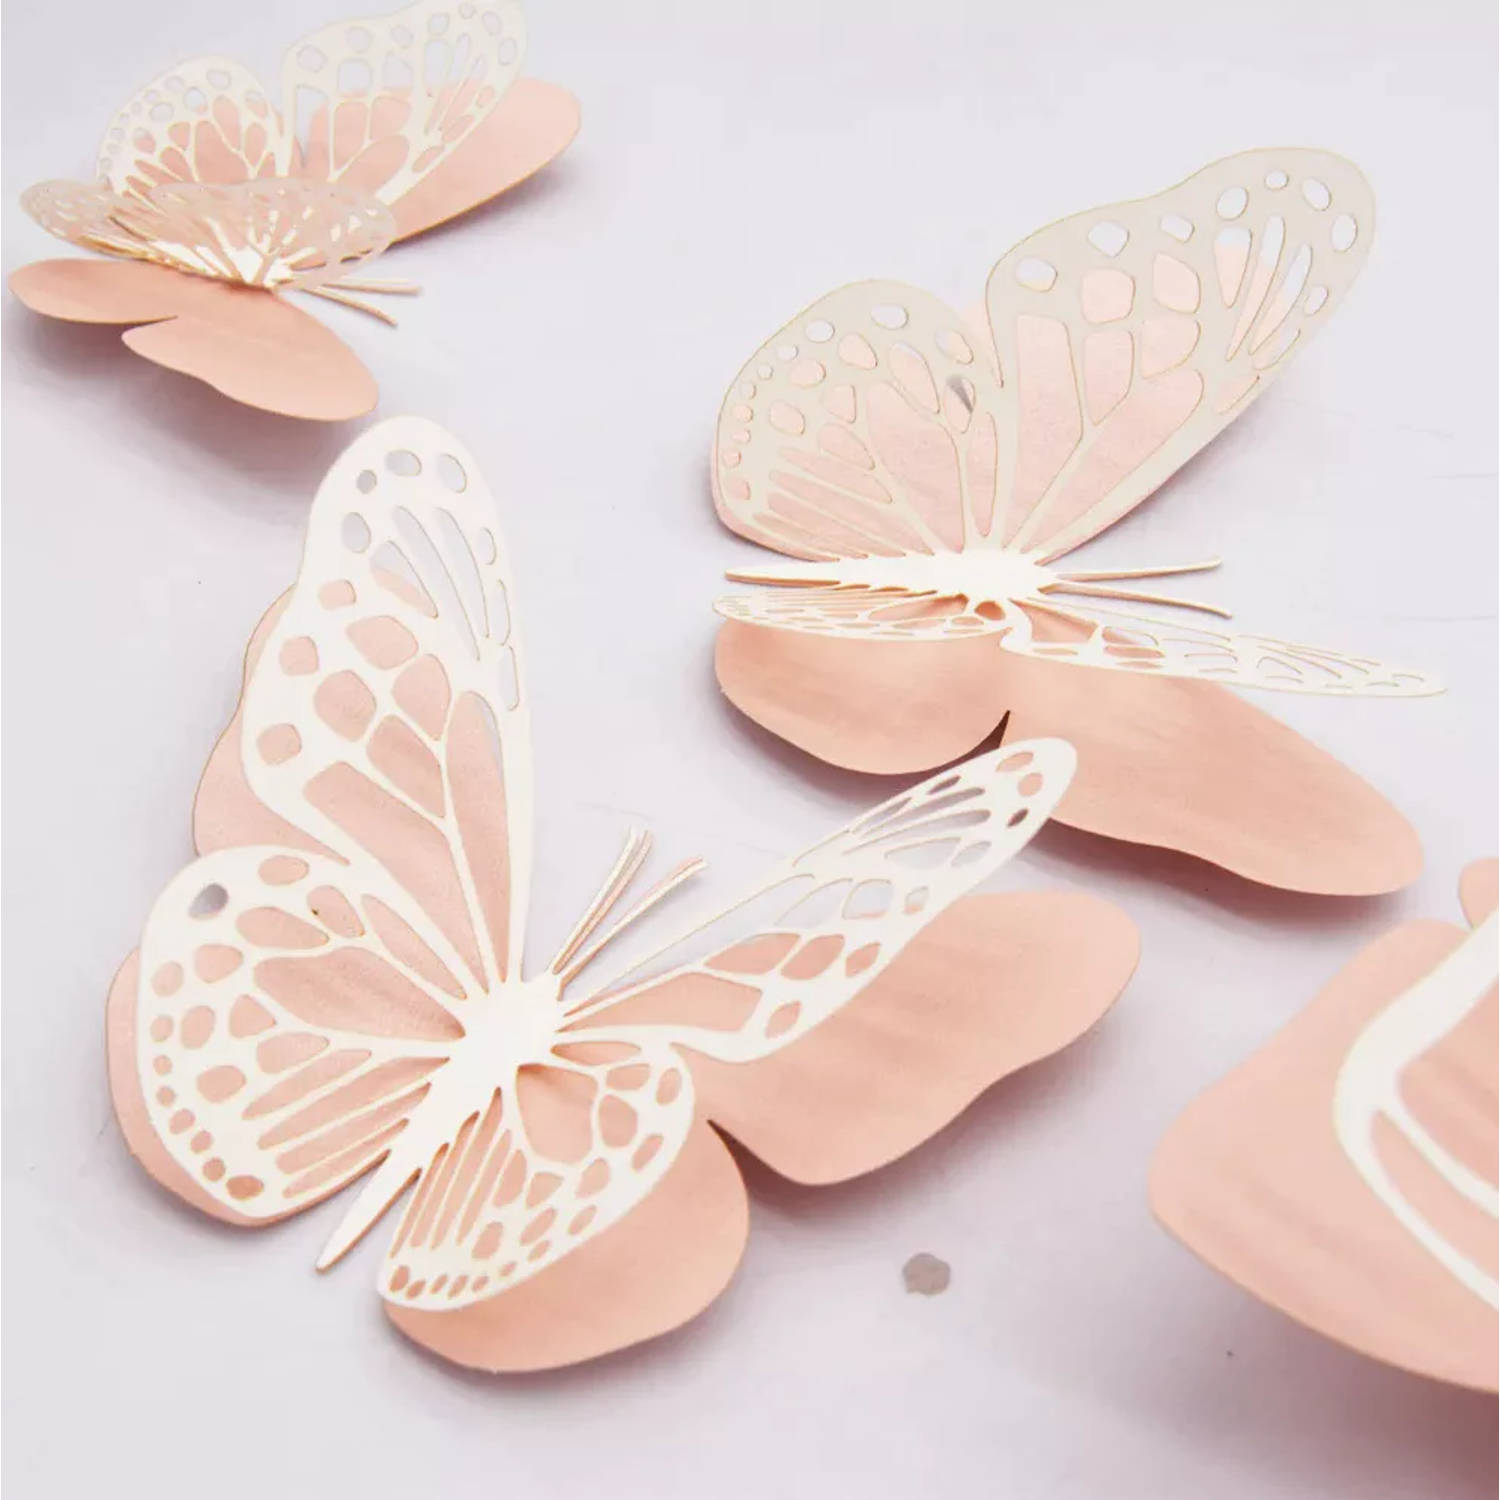 Cake topper 3D decoratie vlinders of muur decoratie met bijgeleverde plakkers 20 stuks Roze/Wit - 3D vlinders - VL-05